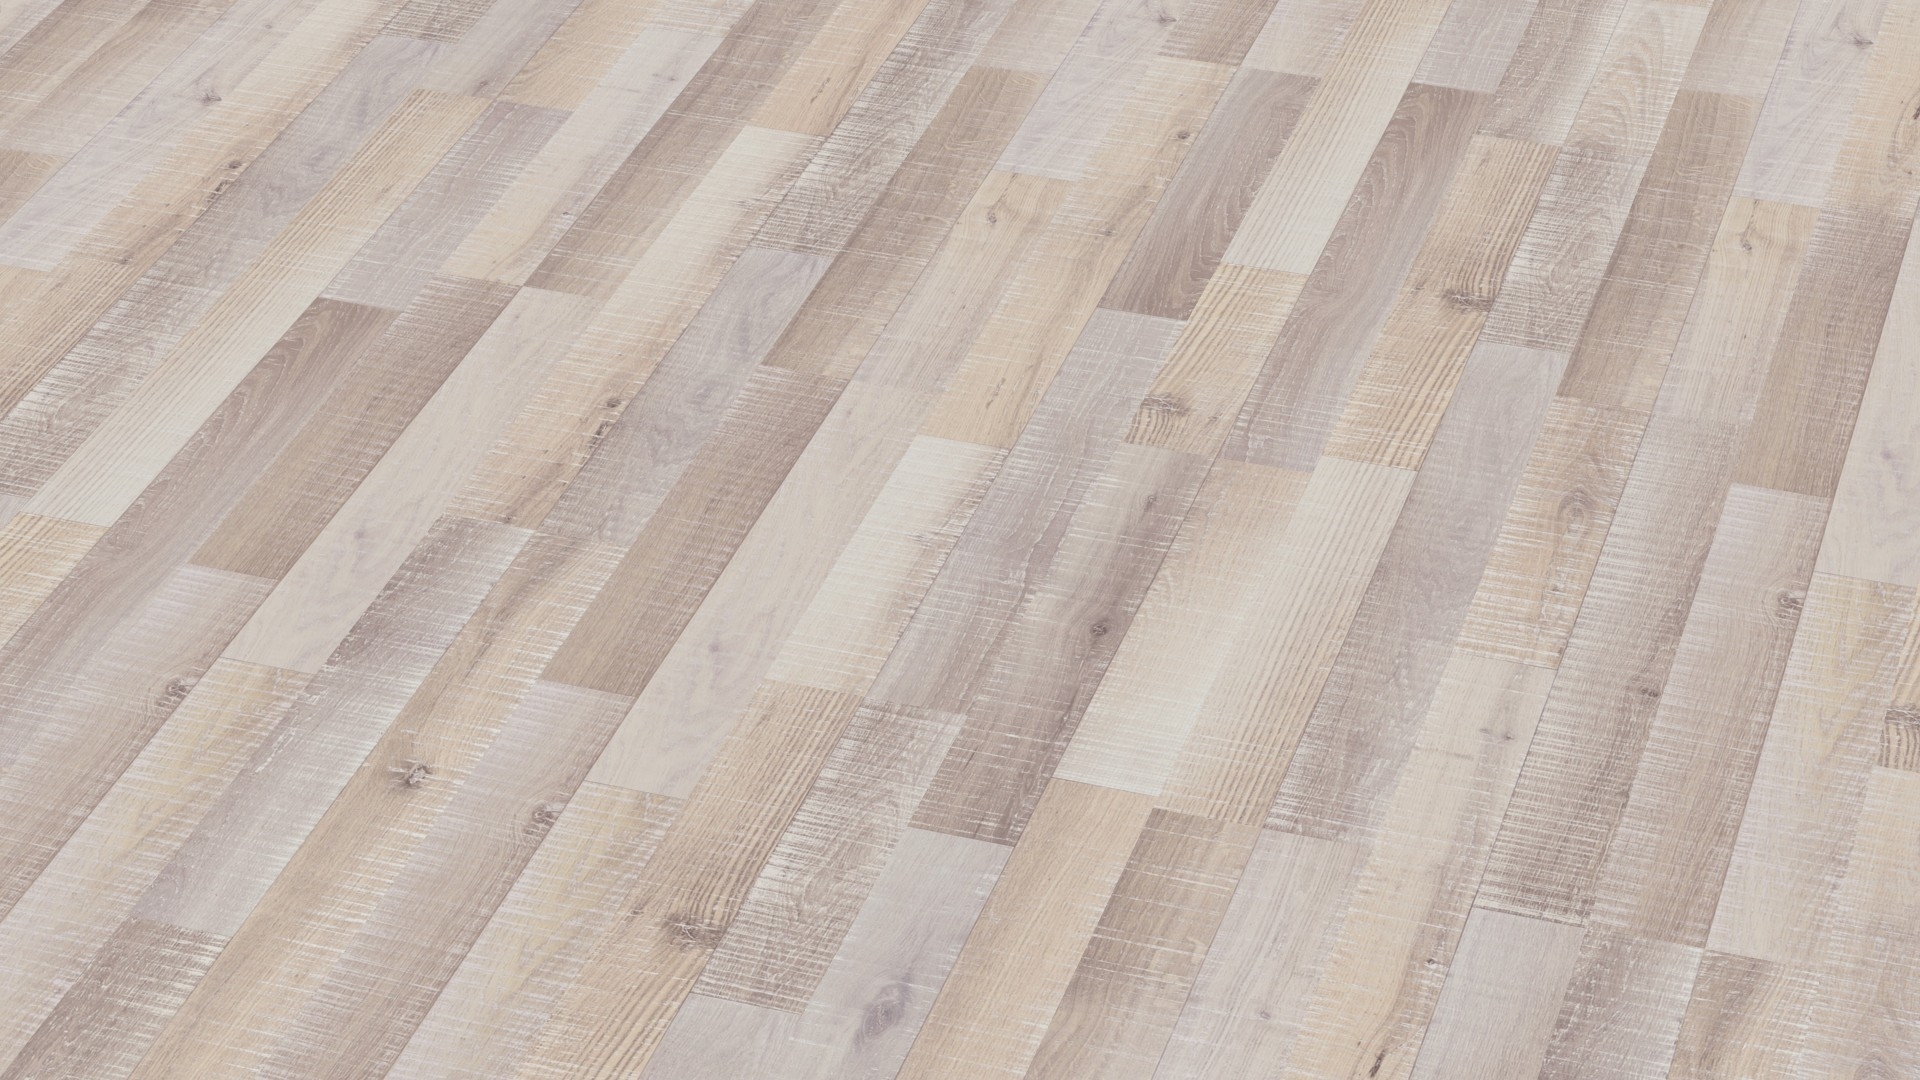 Laminate flooring – Classic Line